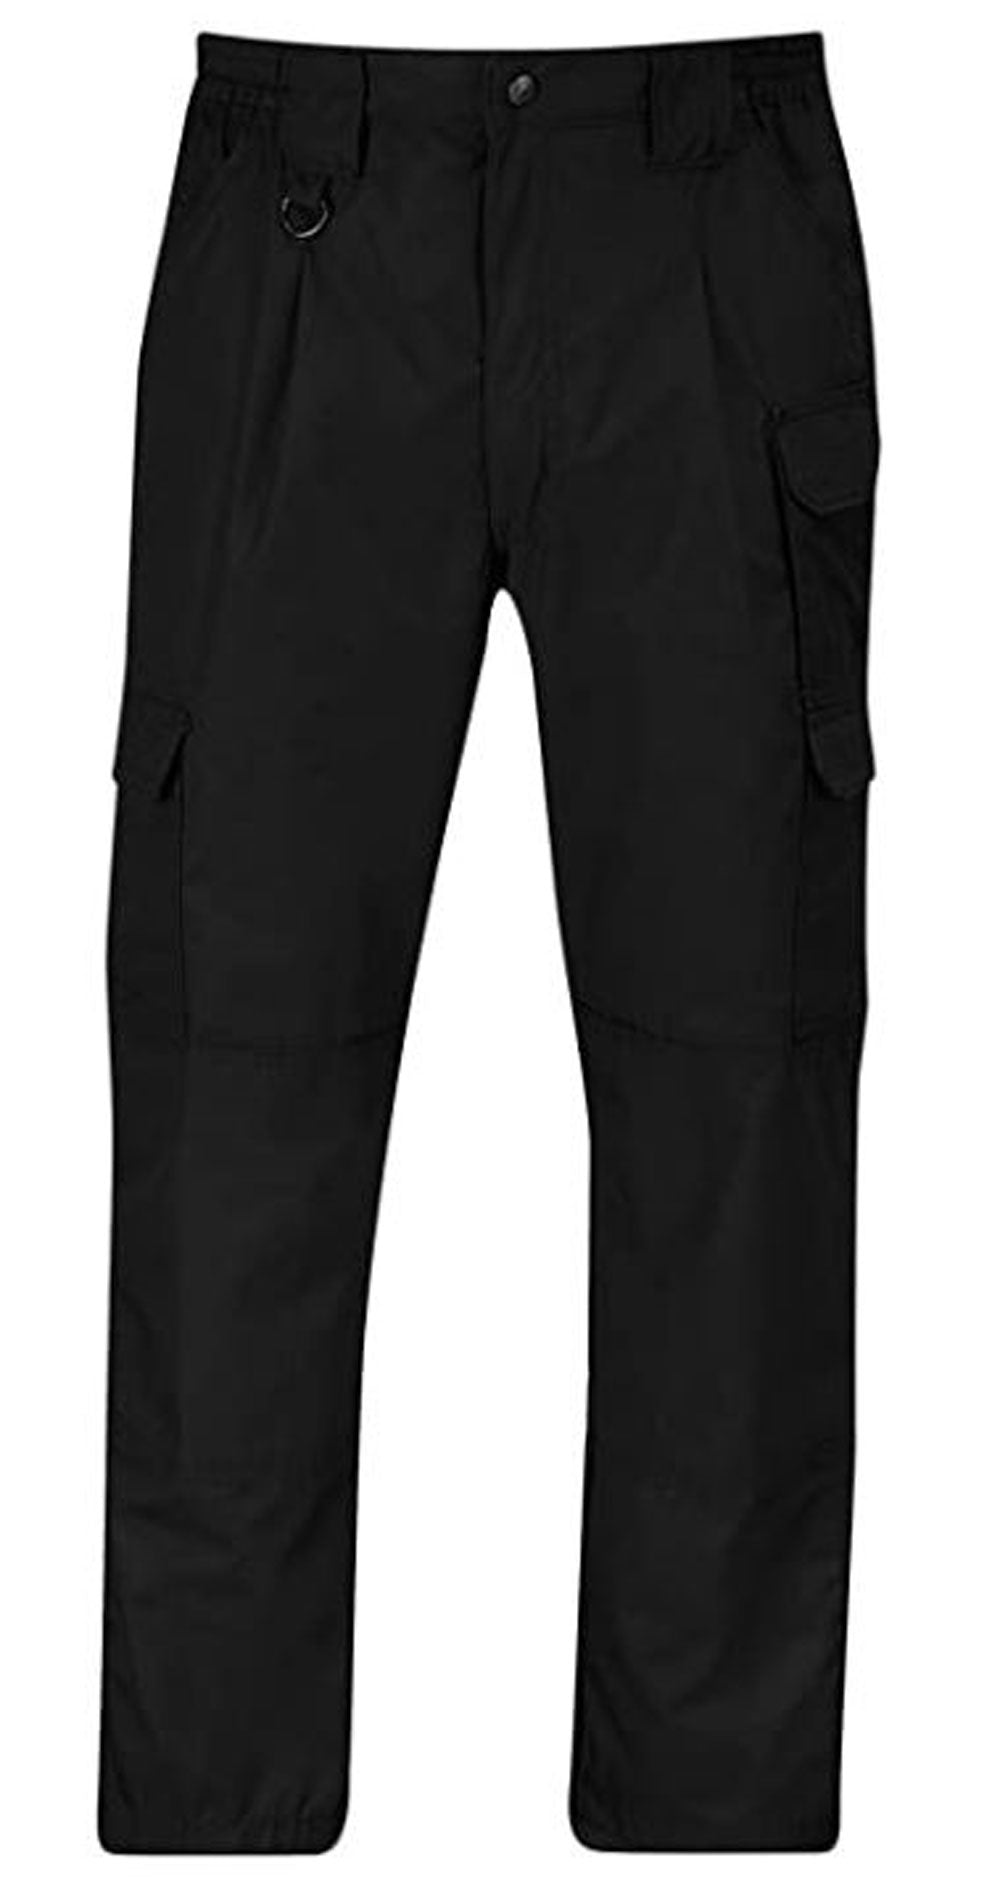 Propper Tactical Black Pants - 42x36 - Propper